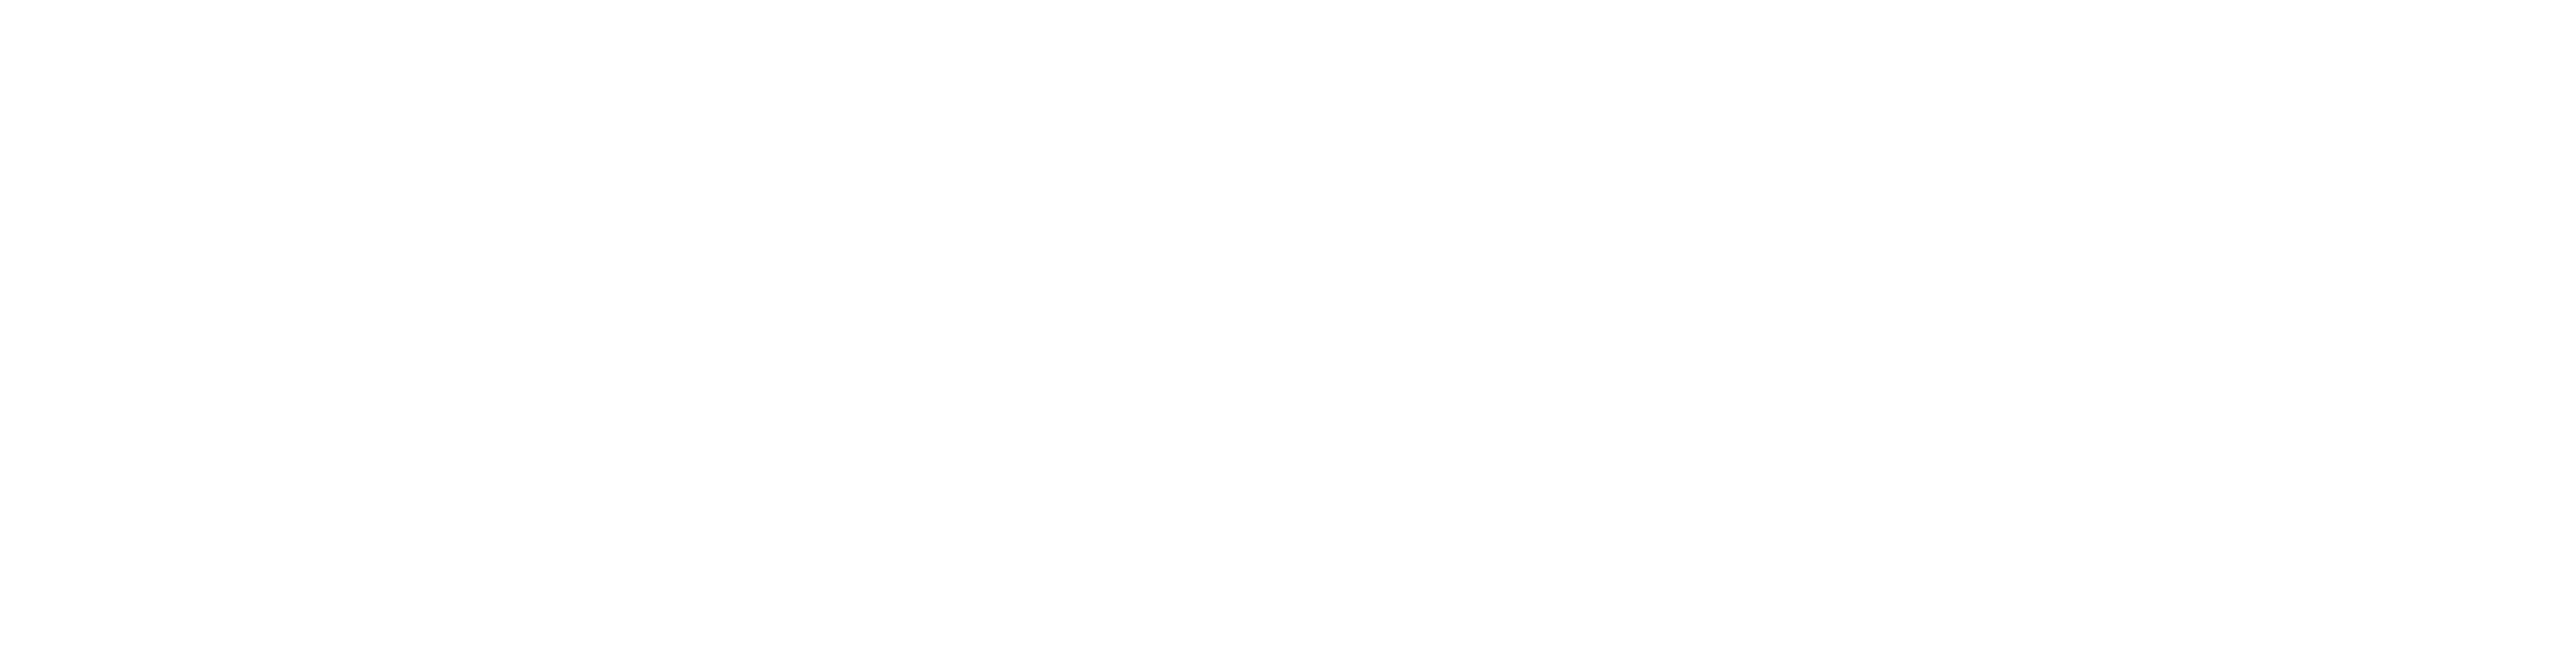 Info Irpinia